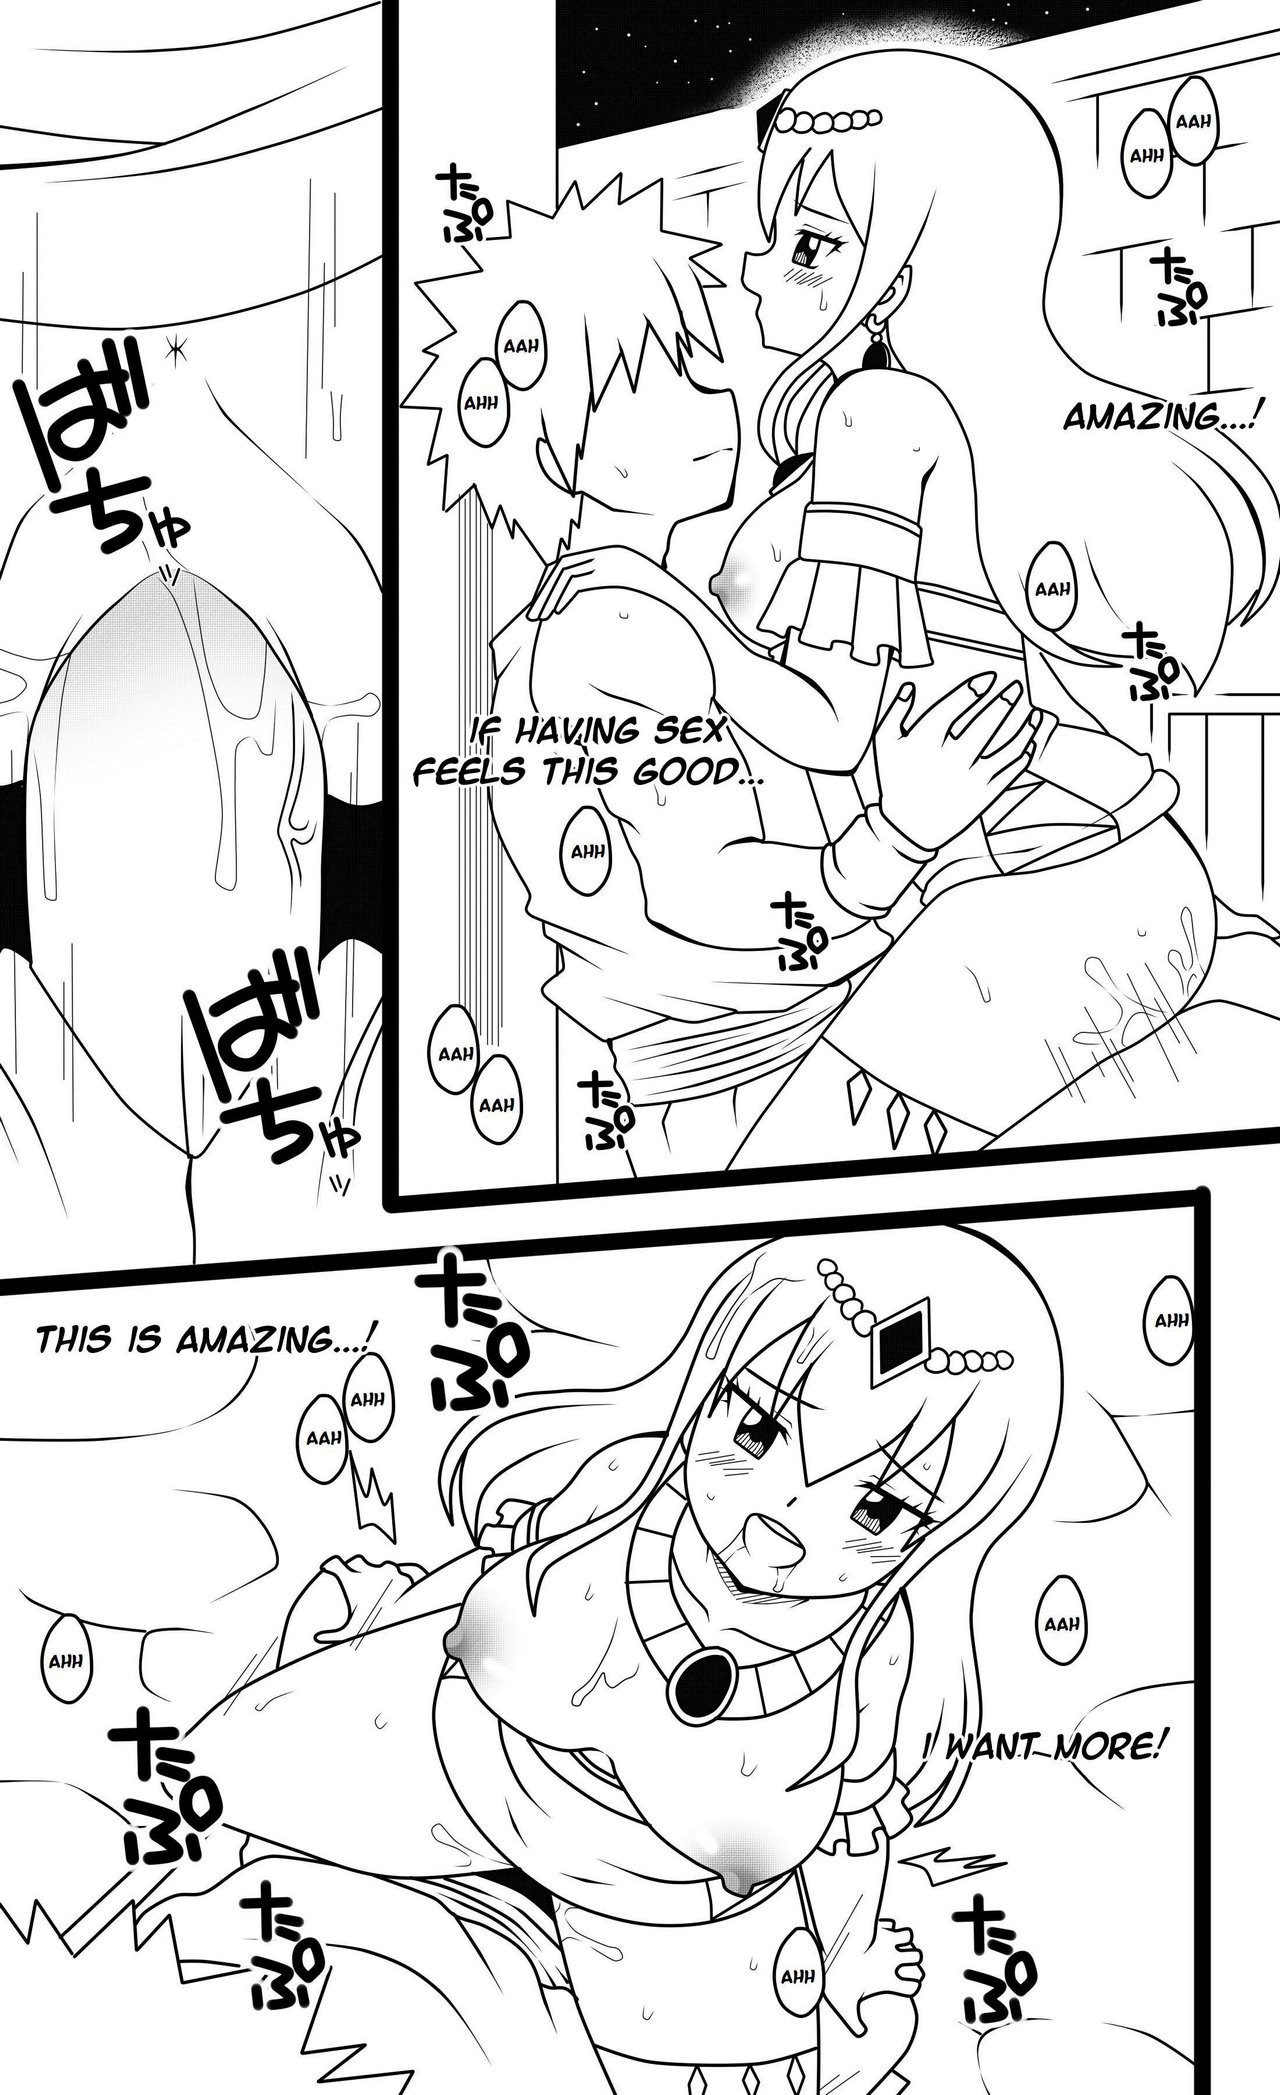 Hisui's Royal Treatment porn comic picture 8